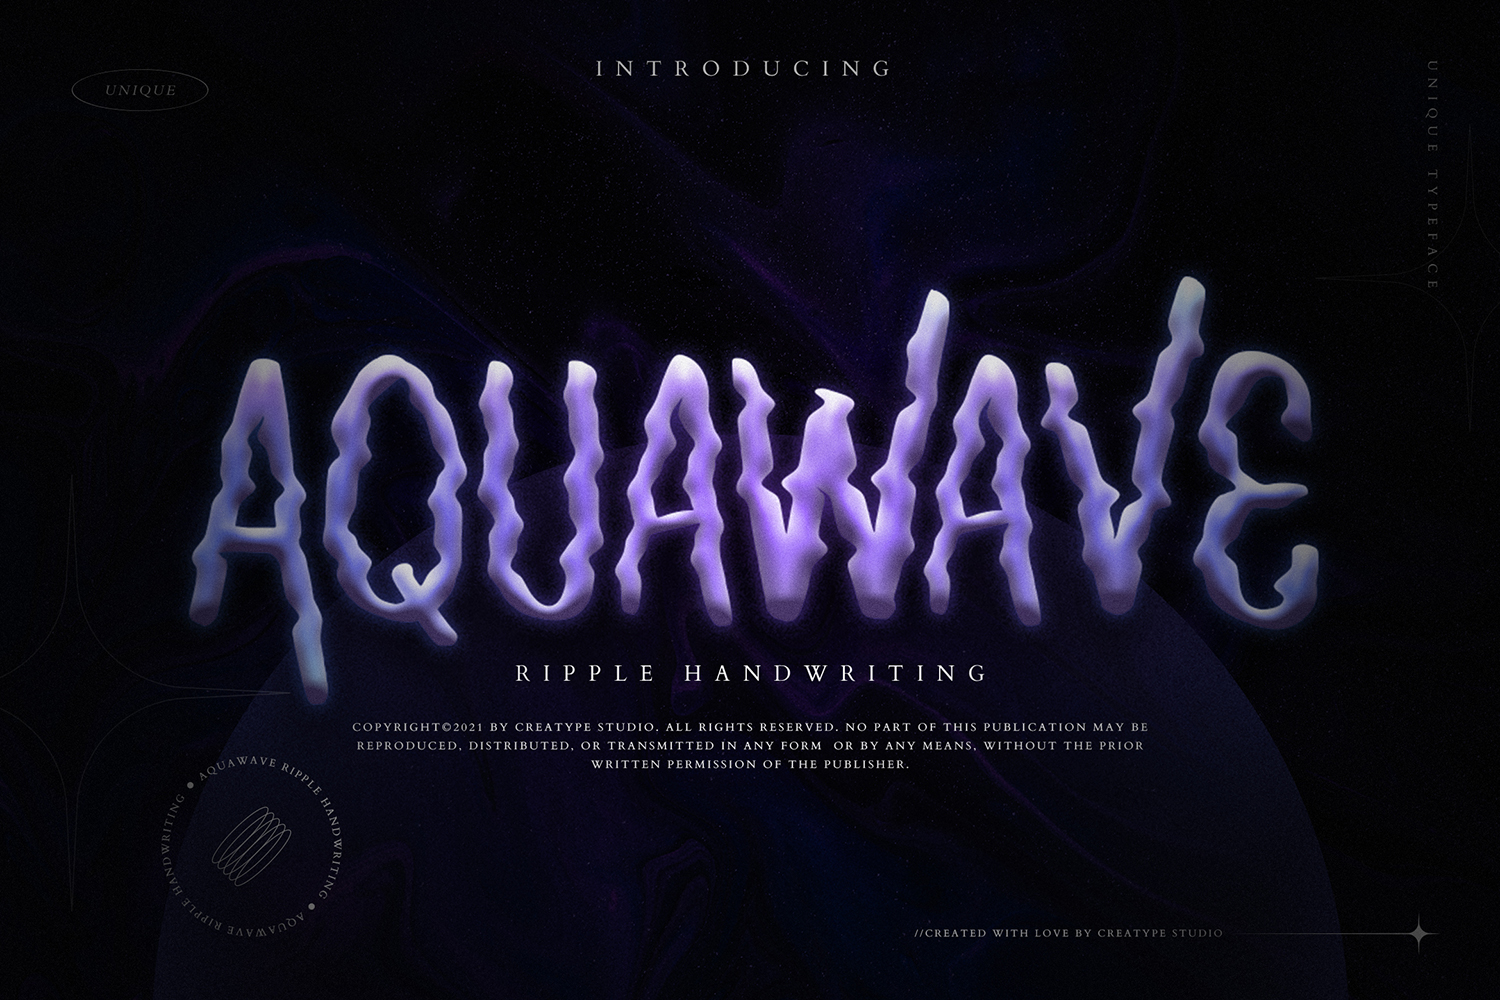 Aquawave Free Font